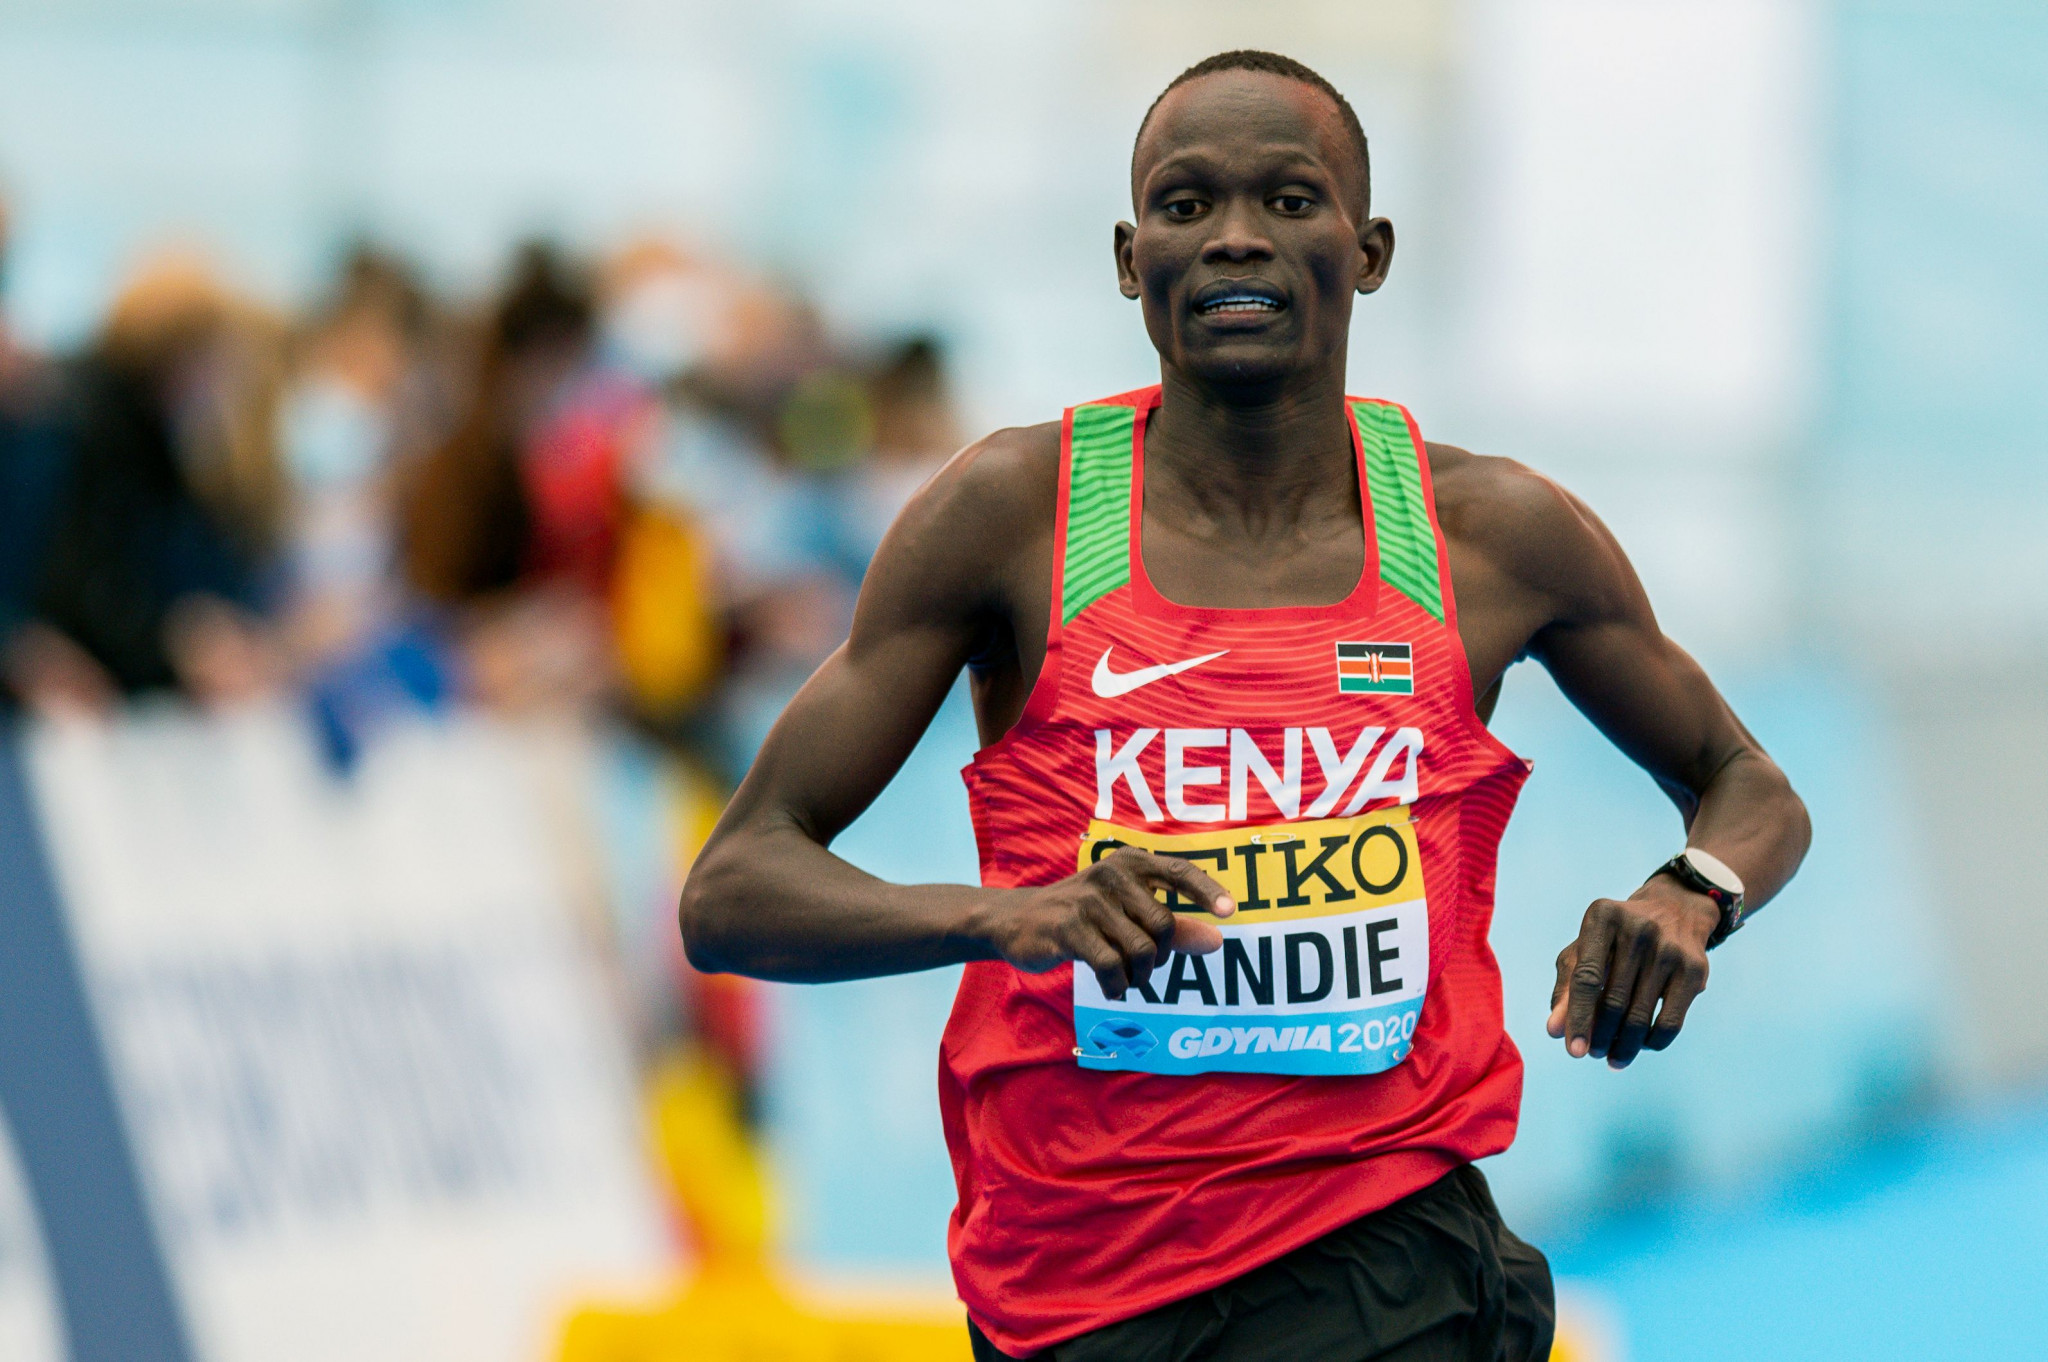 Half marathon world record holder Kandie eyeing 10,000m at Tokyo 2020